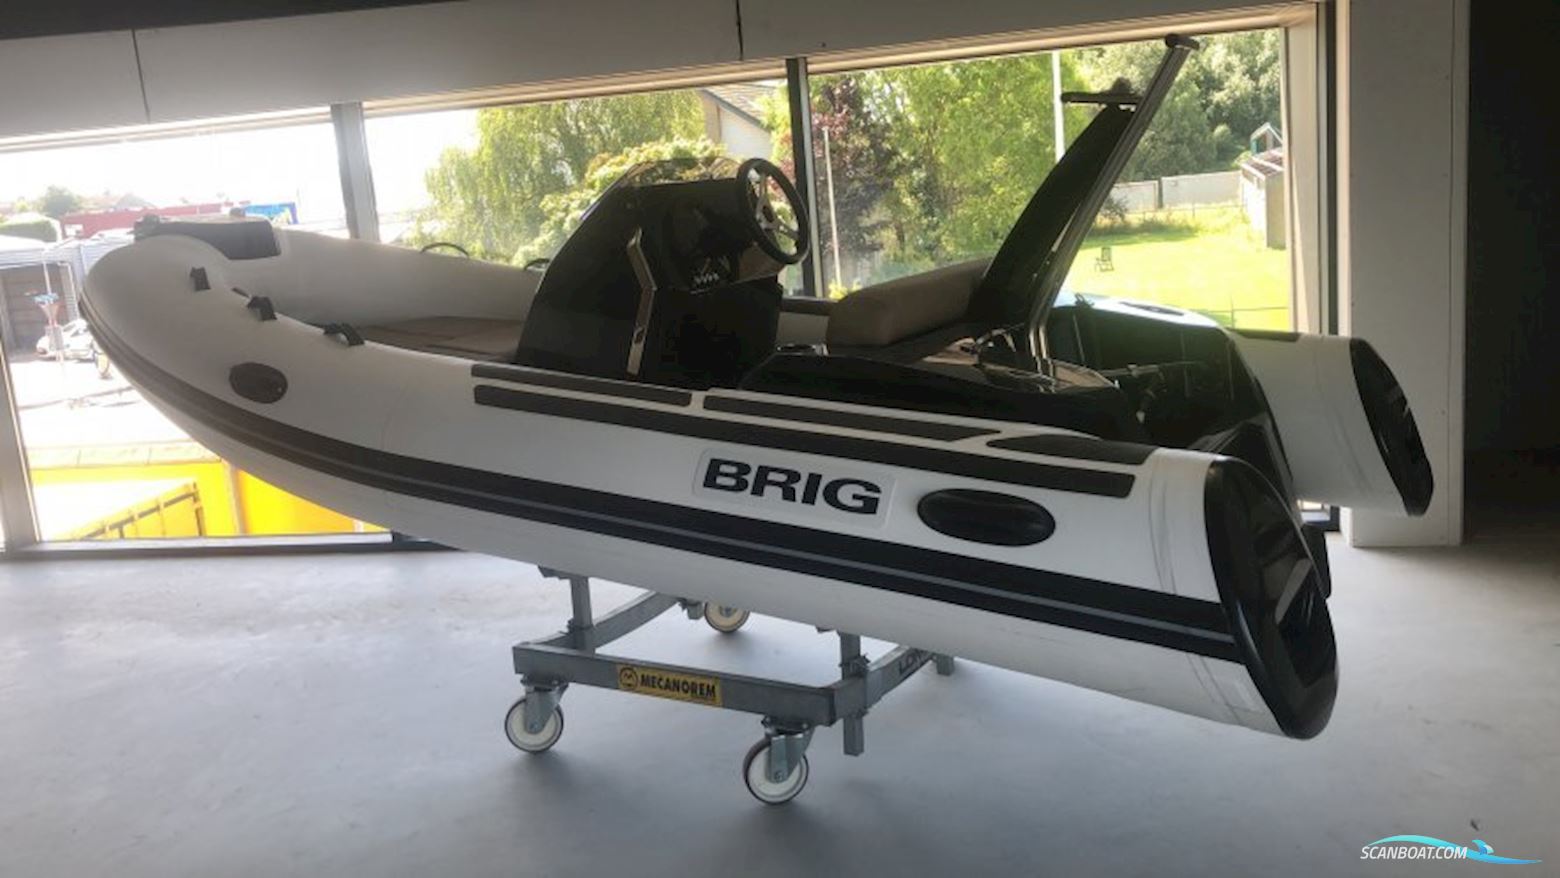 BRIG Eagle 4 wit valmex zwarte hull Motorbåd 2023, med honda motor, Holland